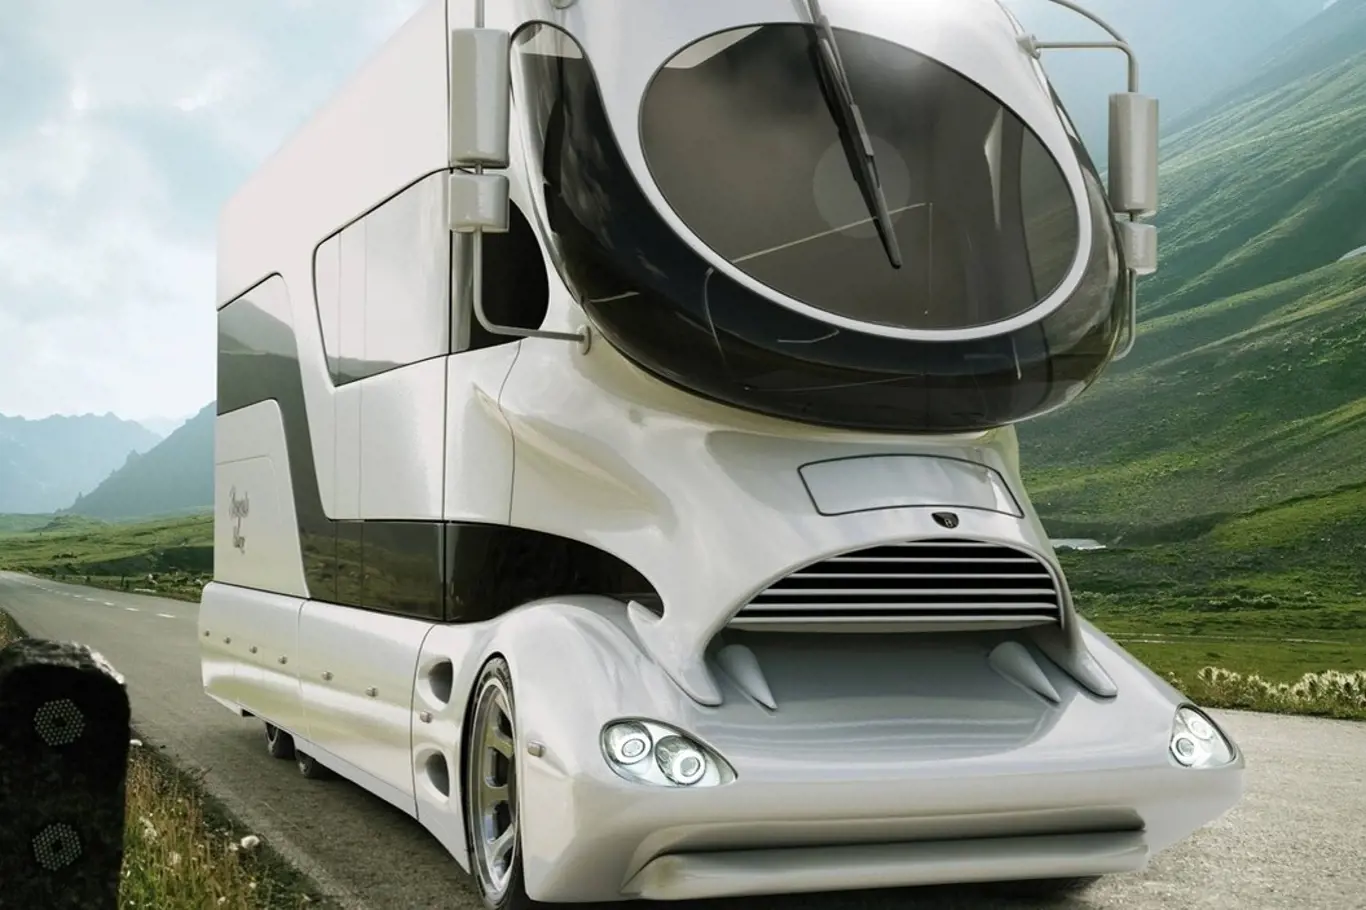 Futuristicky vyhlížející karavan "eleMMent Palazzo" nabízí originalitu, kam lidské oko dohlédne